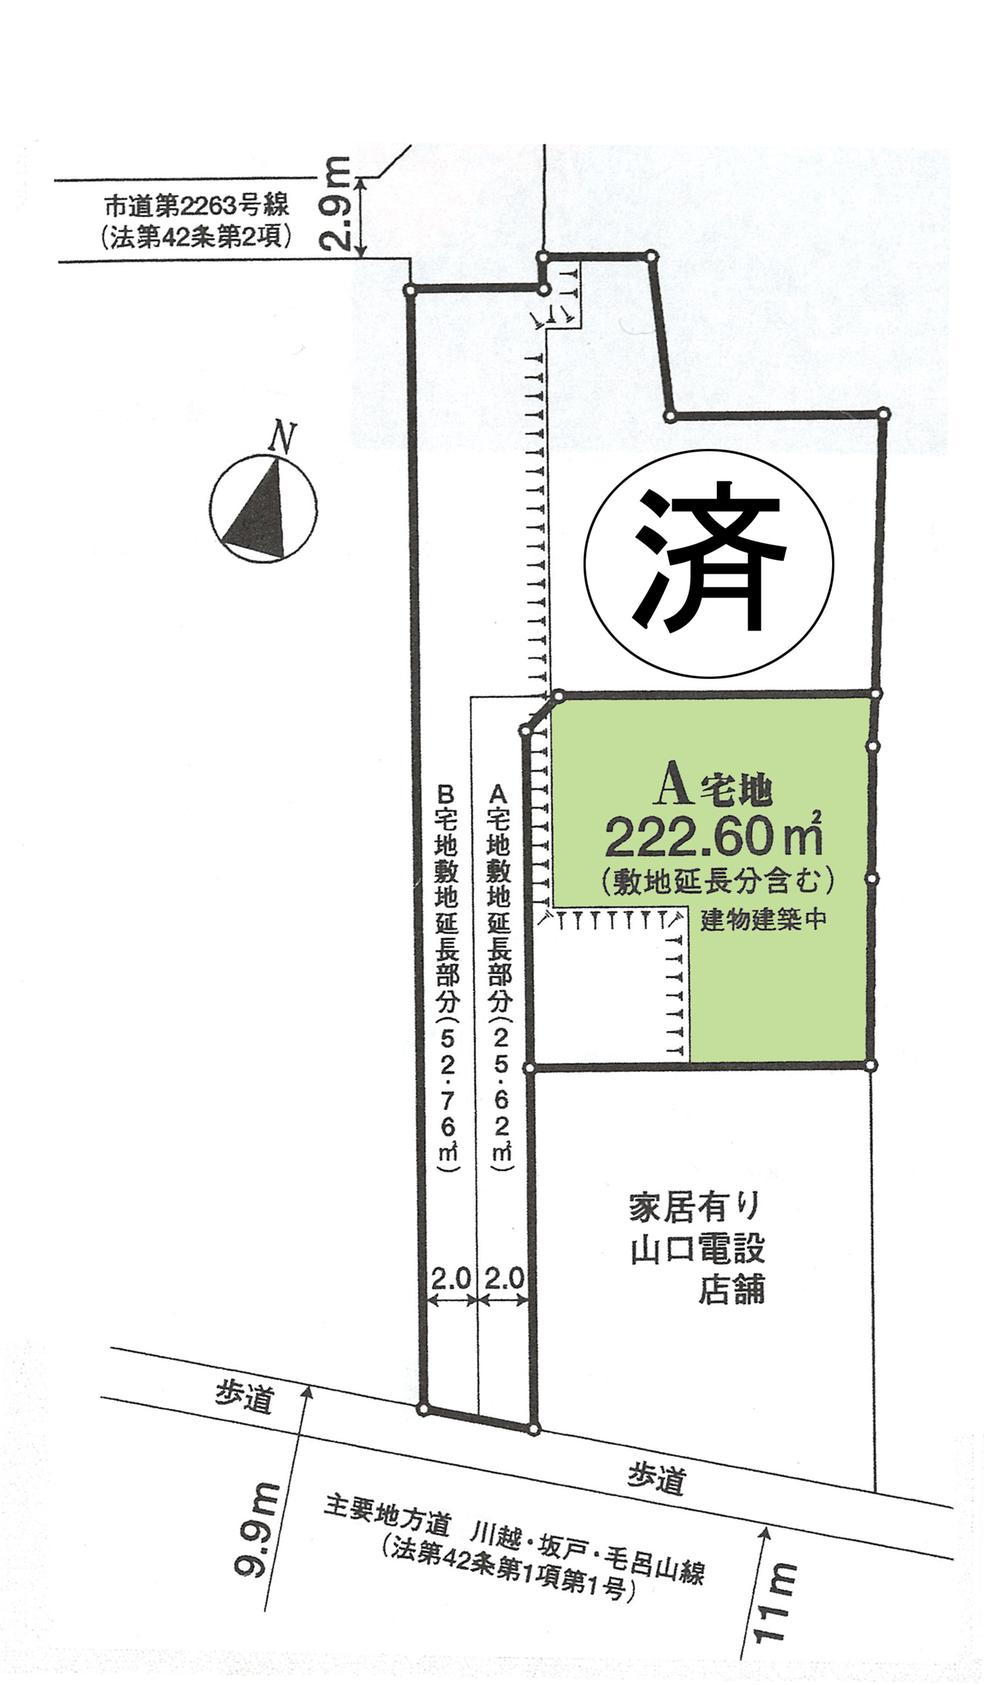 Compartment figure. 26 million yen, 4LDK, Land area 196.98 sq m , Building area 107.75 sq m compartment view